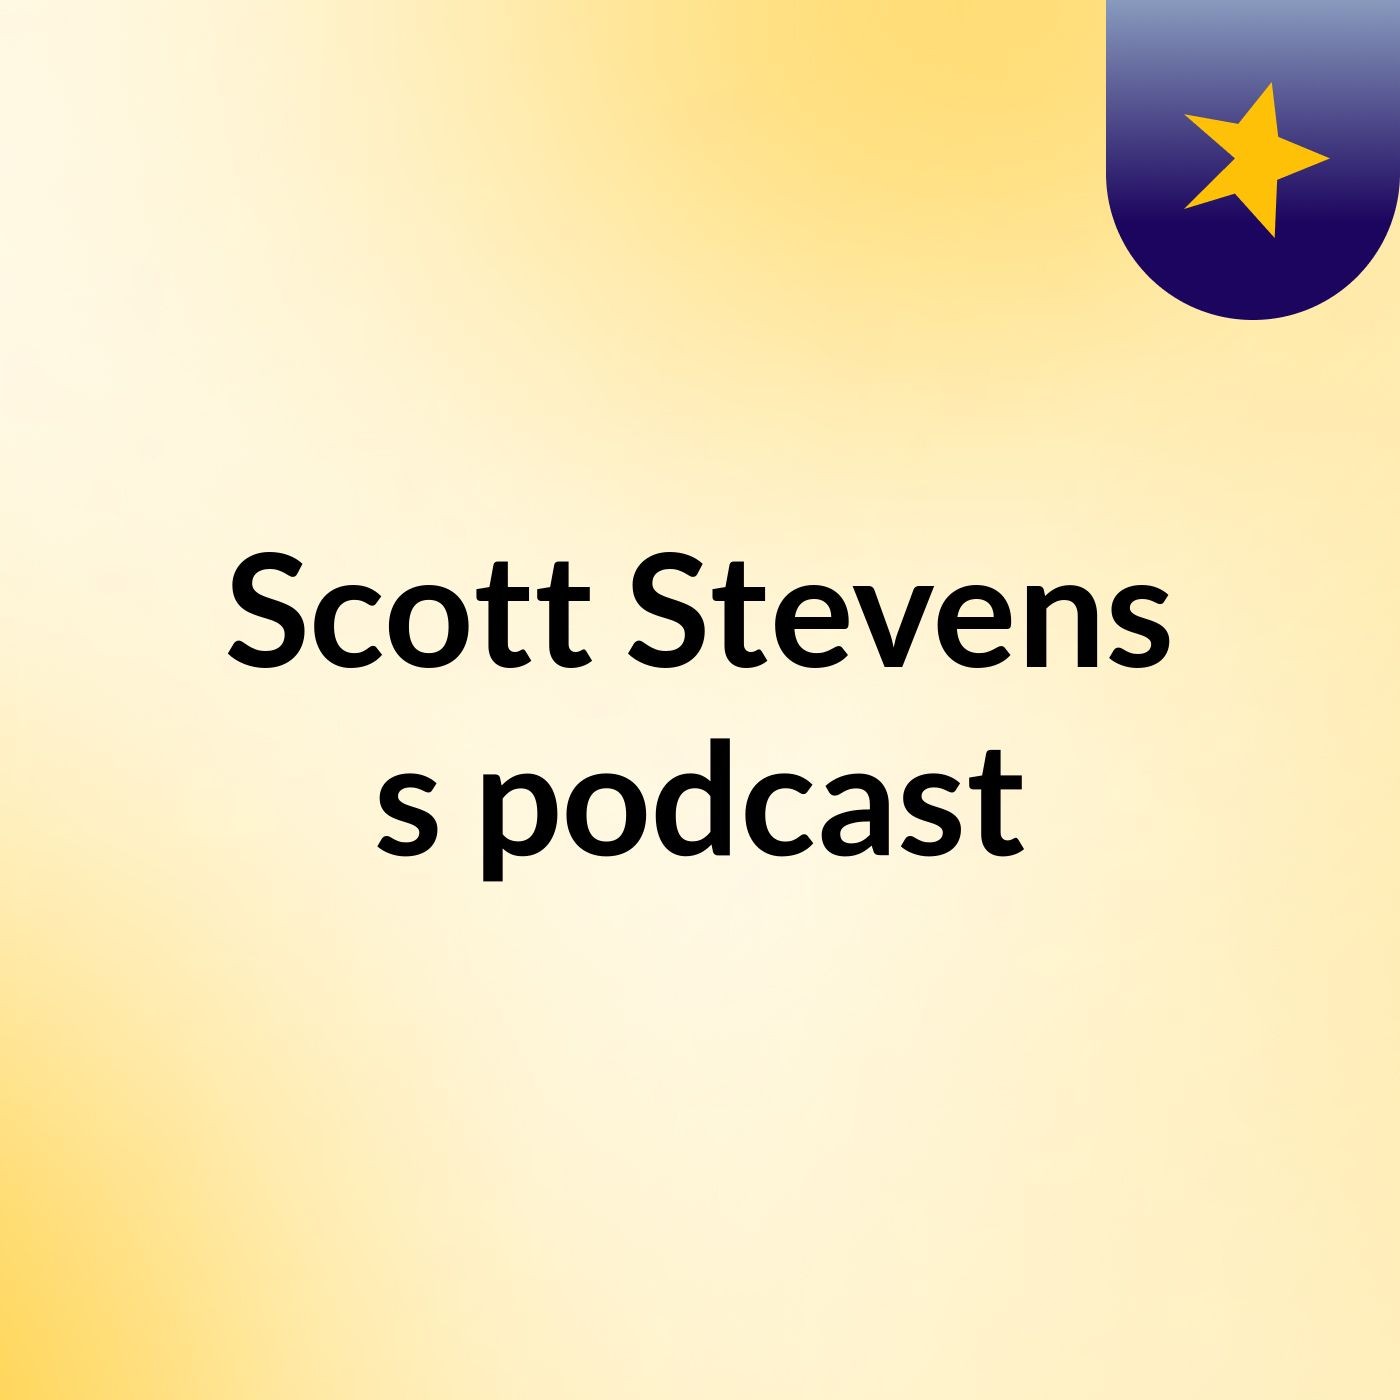 Scott Stevens's podcast